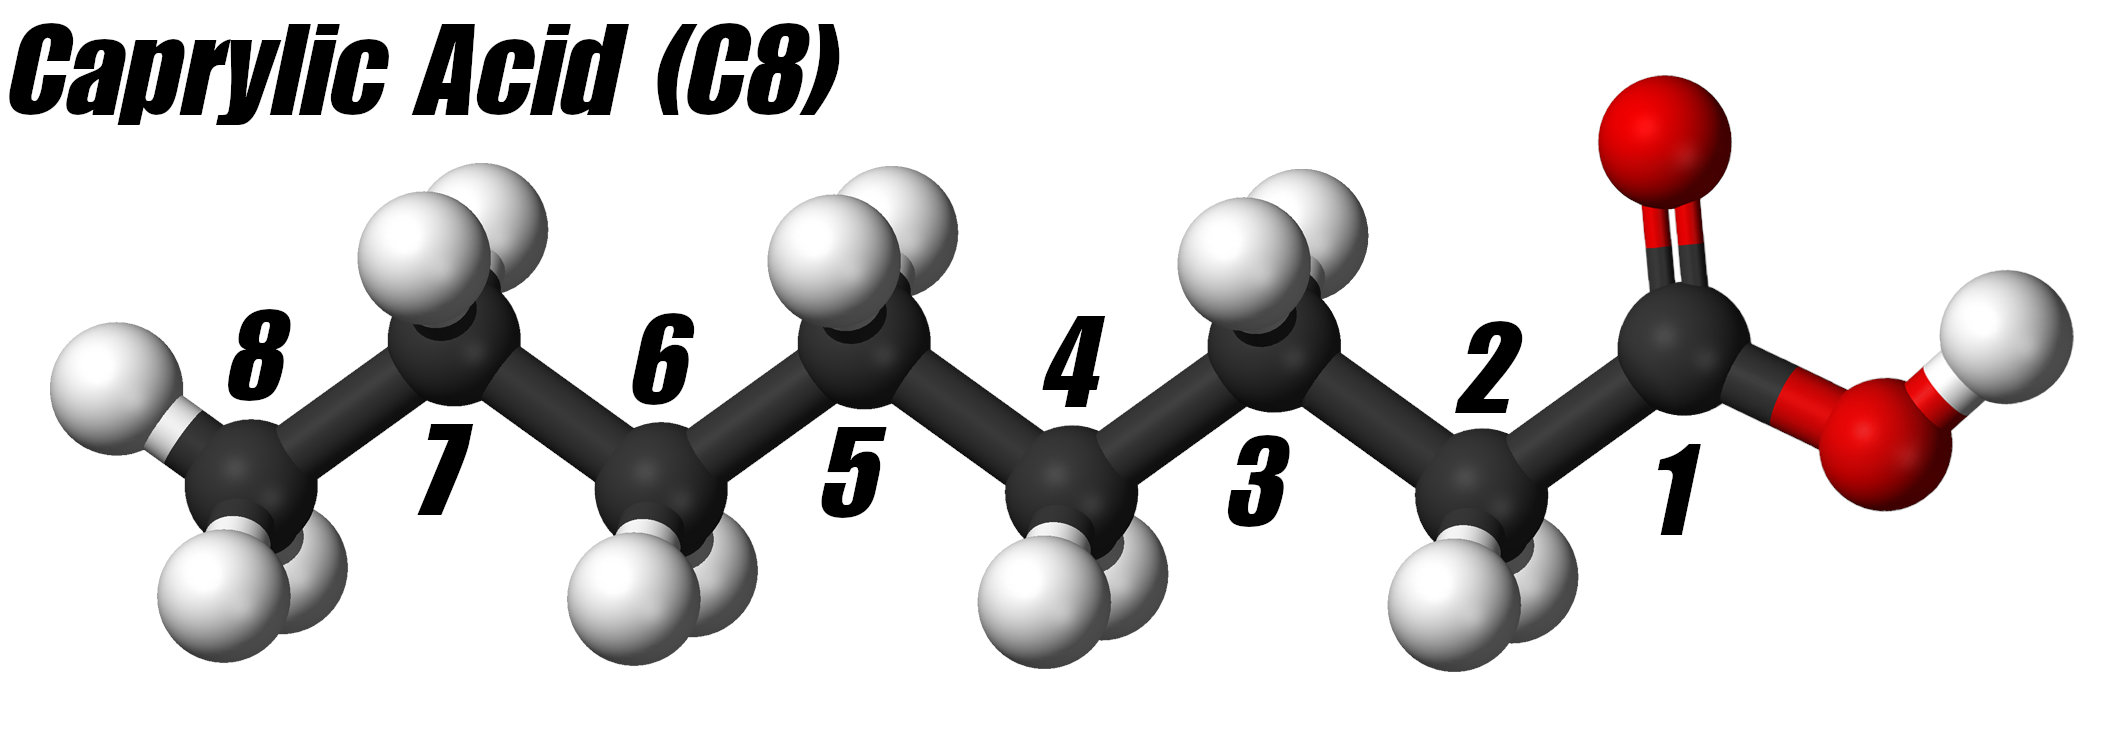 Caprylic Acid (C8)